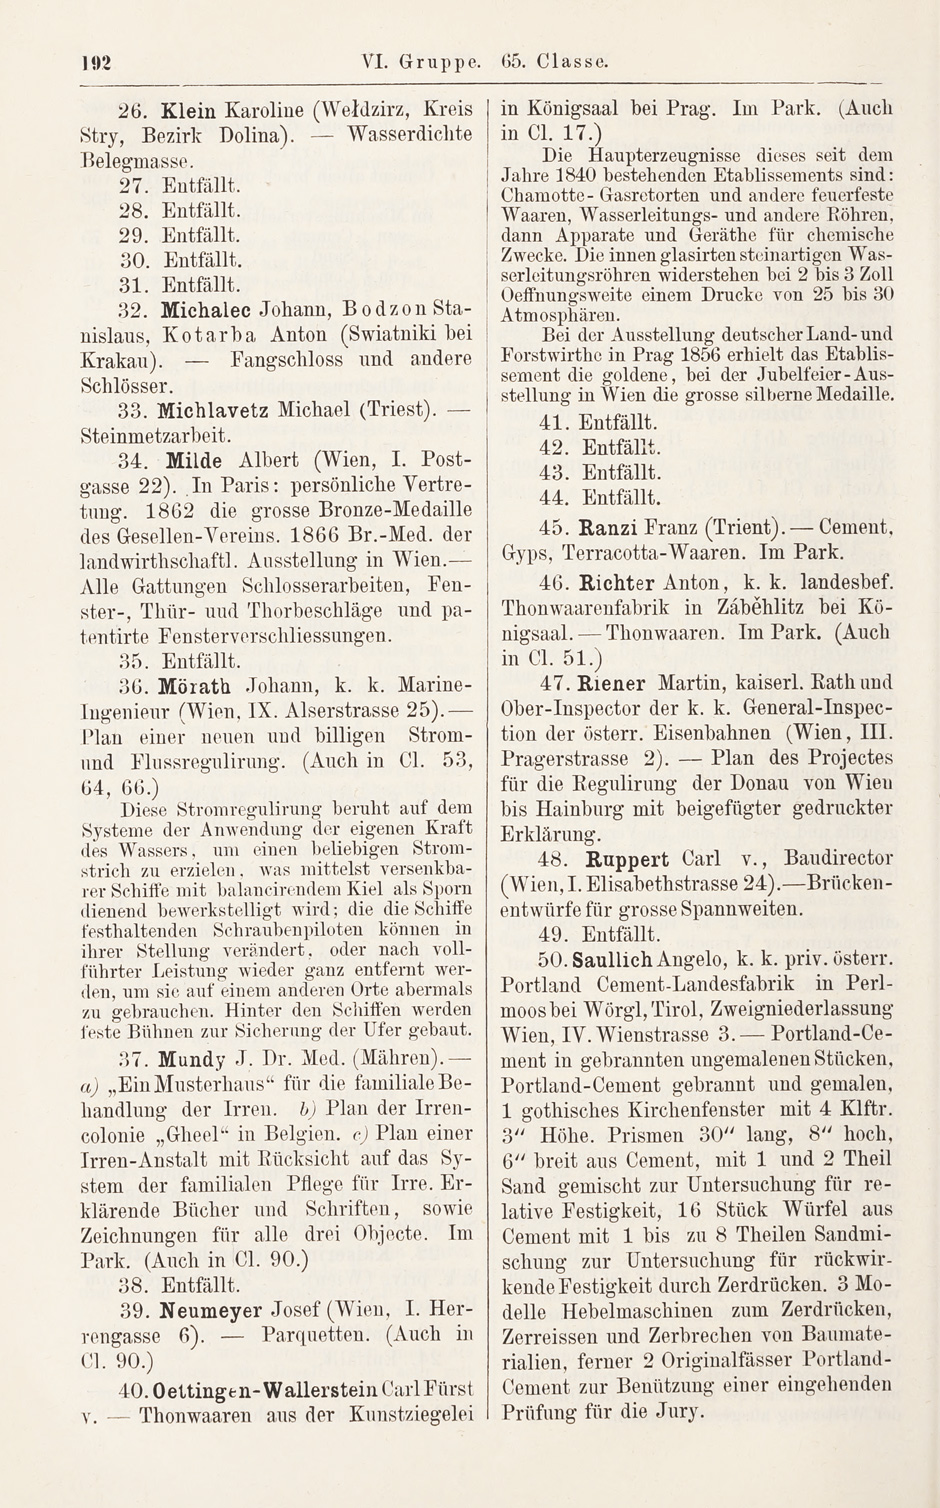 Archivbild 4: VI. Gruppe. 65. Klasse. 34. Milde Albert der Internationalen Ausstellung zu Paris 1867